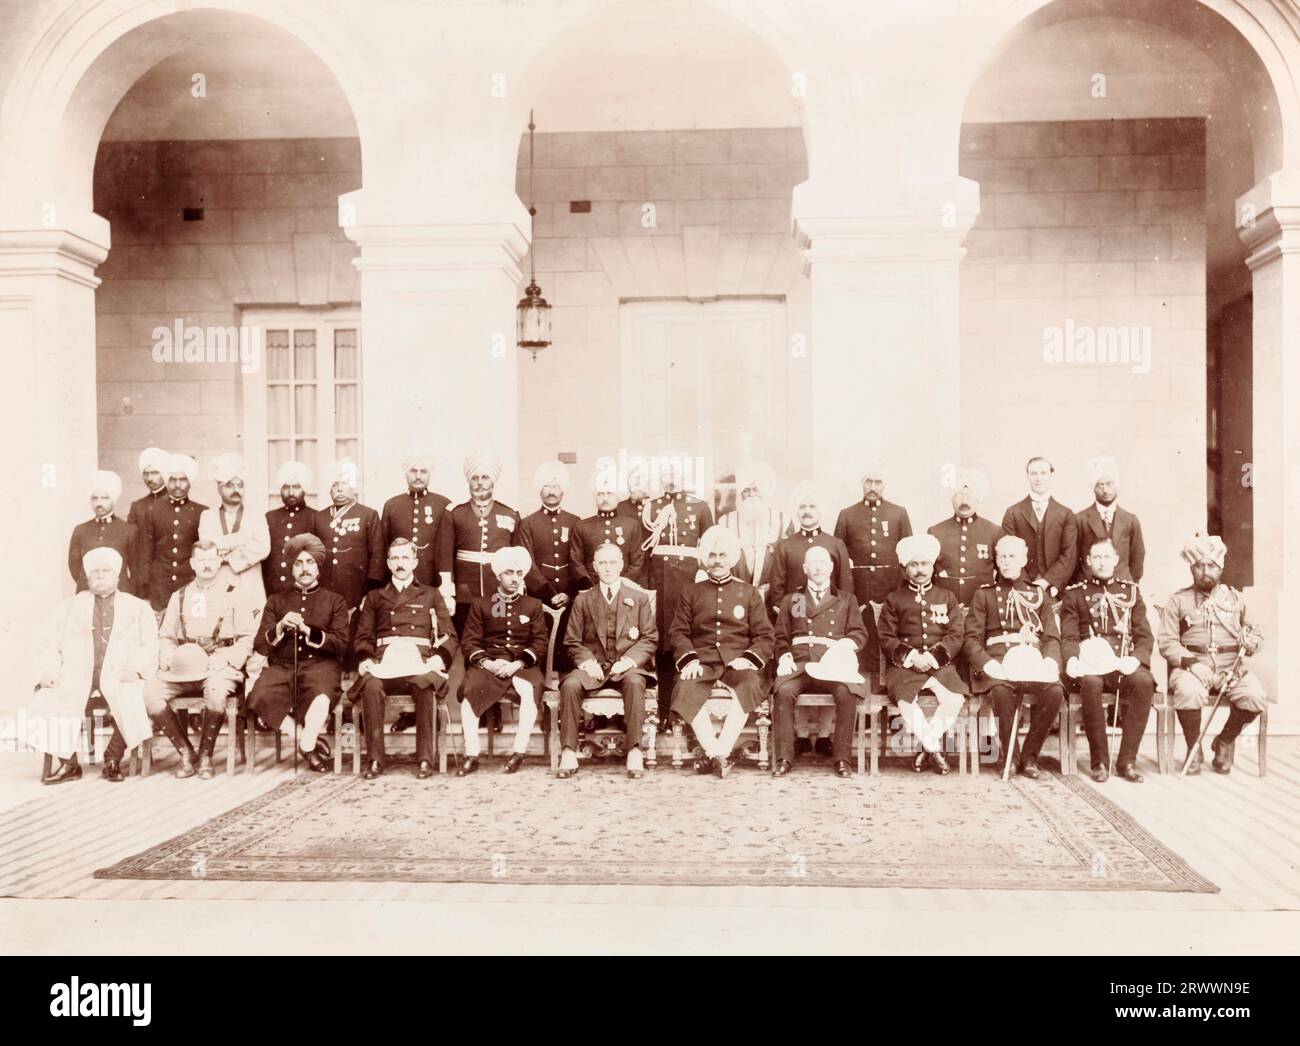 Dignitari indiani e britannici in uniforme si schierano per un ritratto di gruppo sotto gli archi a pilastri del Palazzo Kapurthala nel Punjab. DIDASCALIA DEL MANOSCRITTO ORIGINALE: NORMAN S.S.S.O FRENCH TIKKA SAHIB H.H. KAPURTHALA BORLTON ABDUL HAMID E.C.B H.E.W. FEROZ KHAN KAPURTHALA 13/14/2/20. Foto Stock